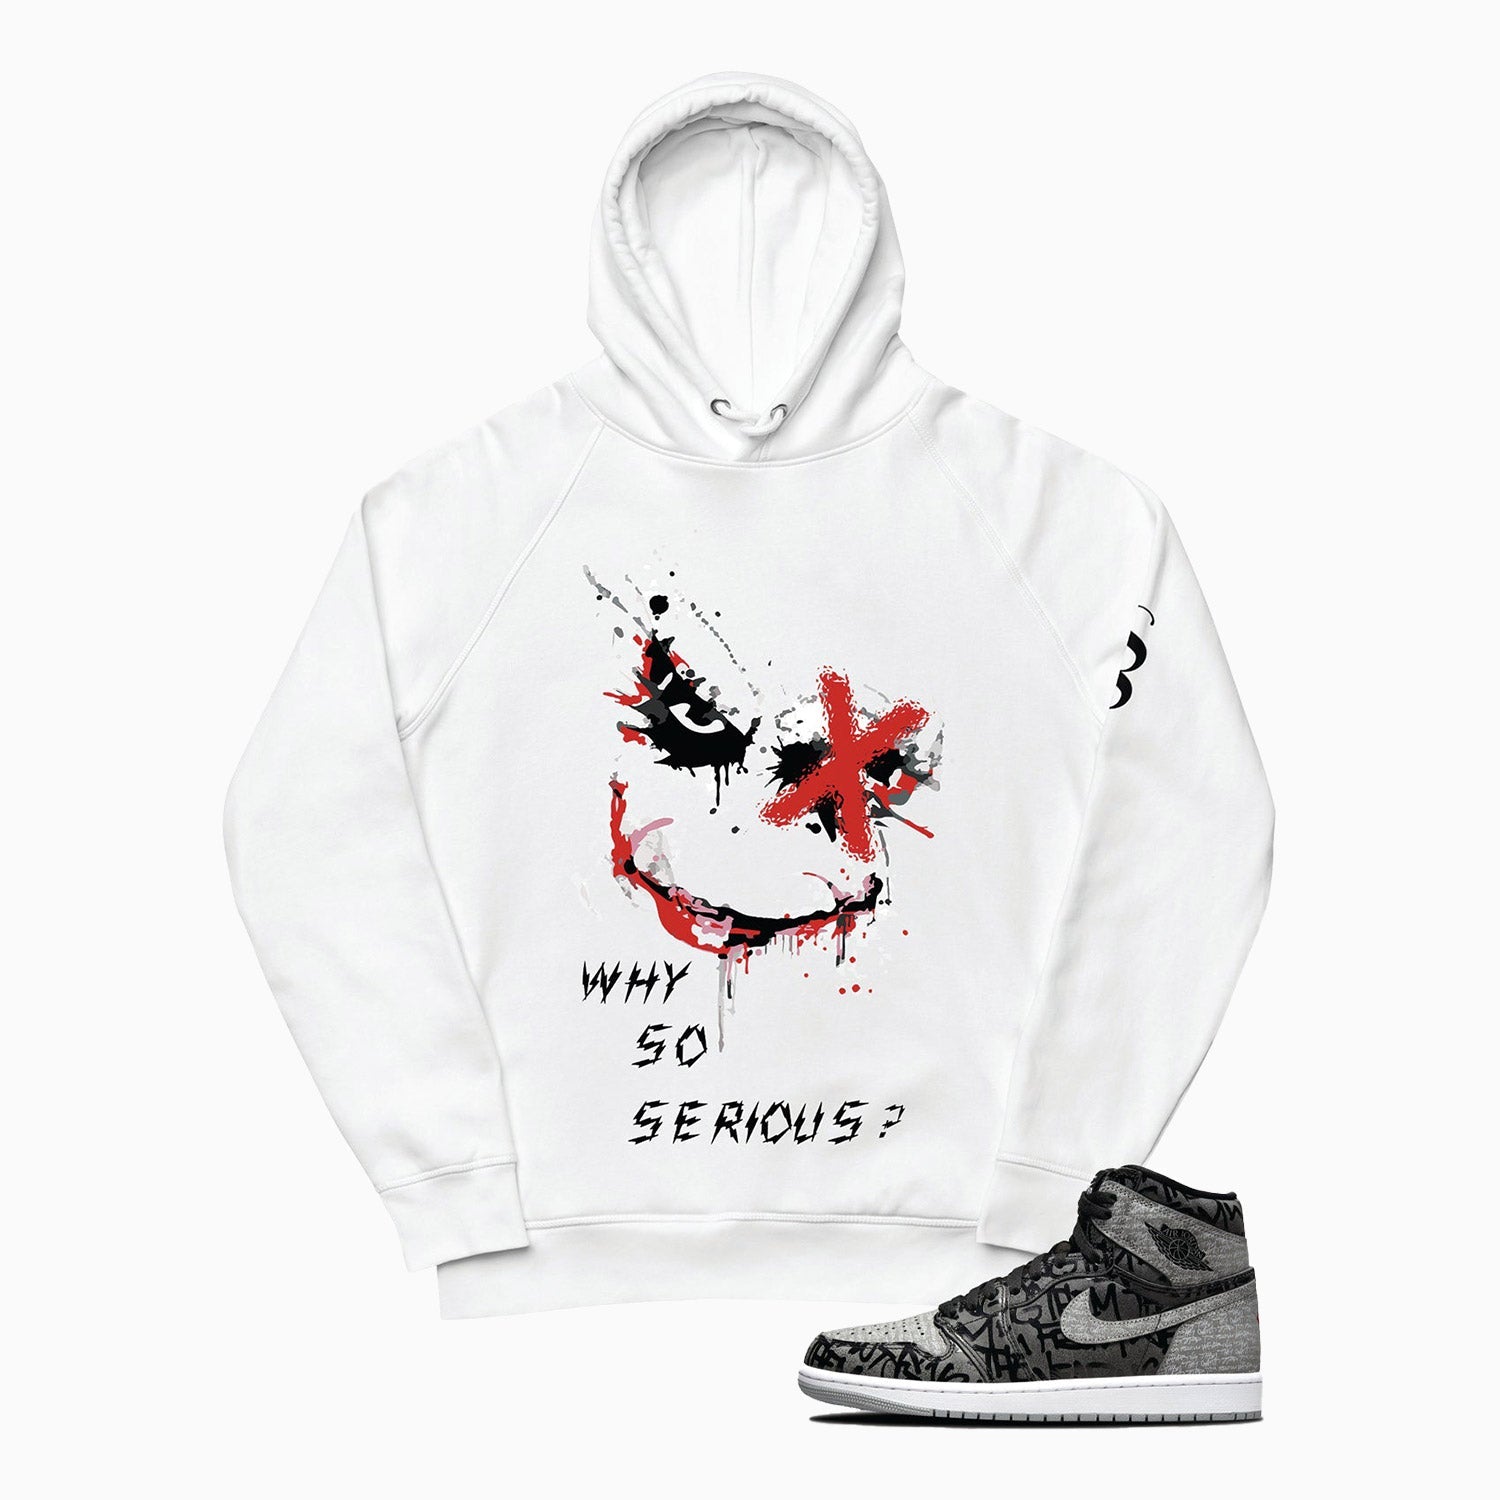 joker-design-printed-pull-over-white-hoodie-for-men-sh106-100